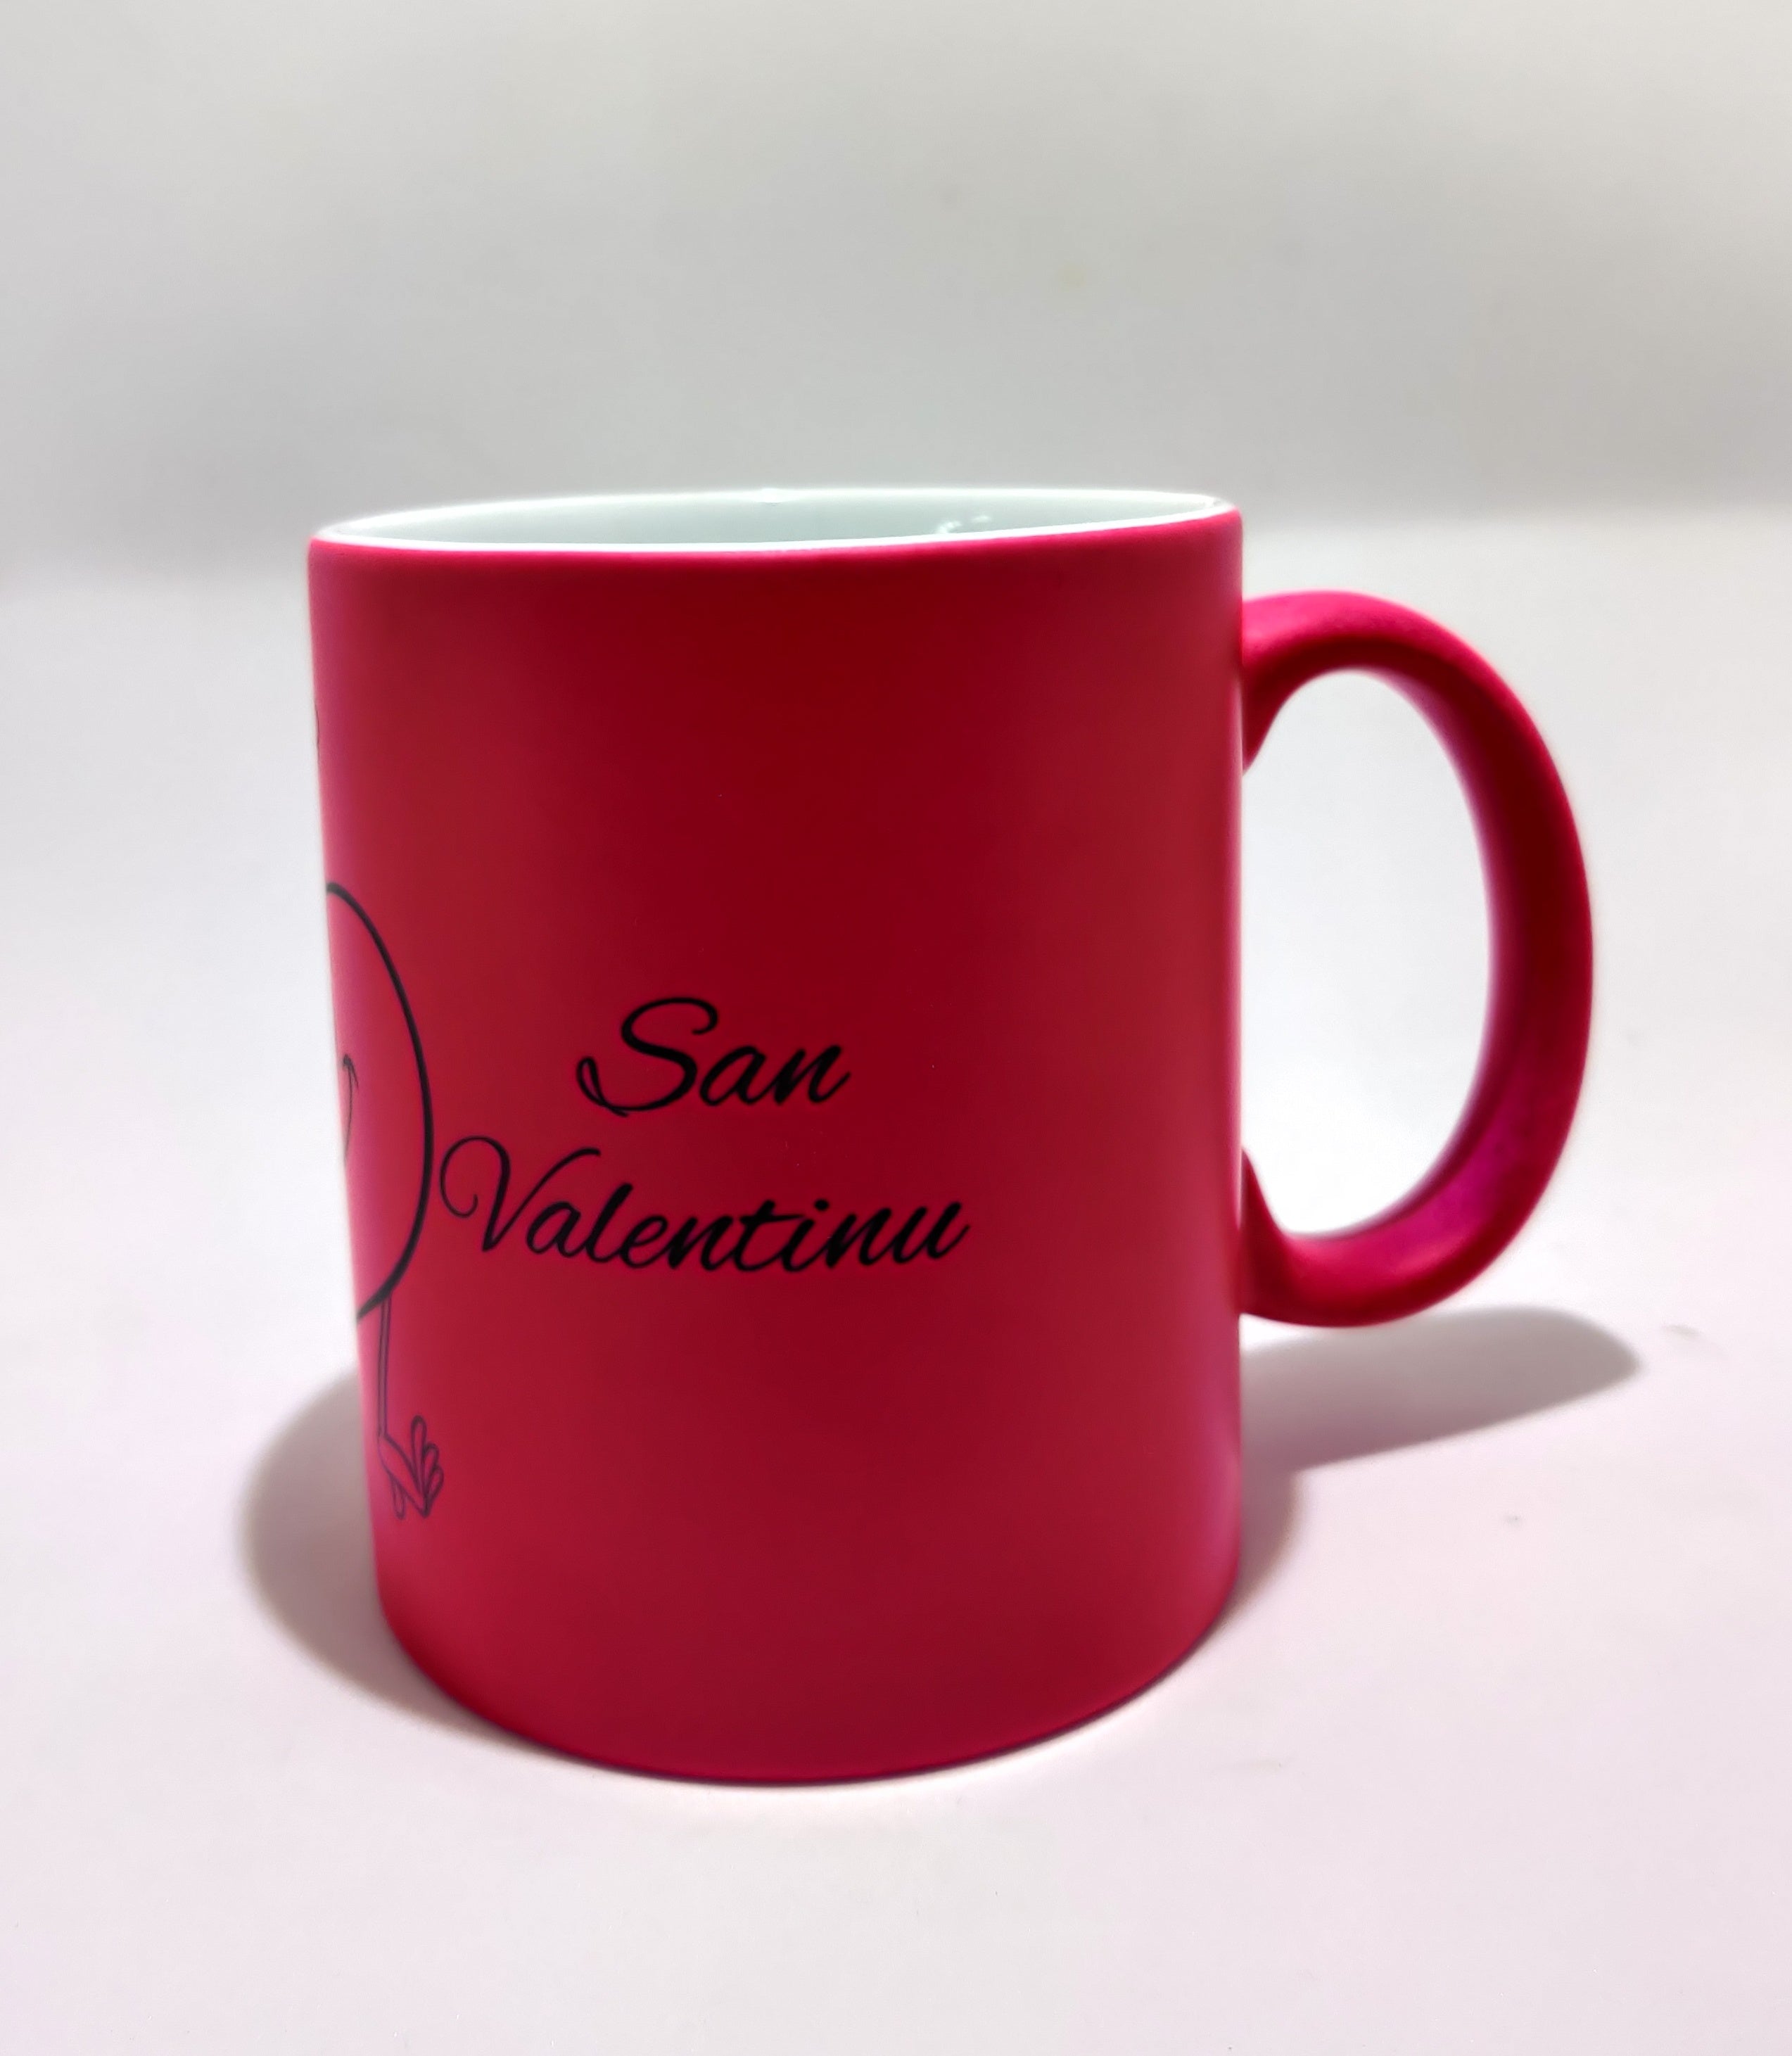 Personalised Mug "San Valentinu"